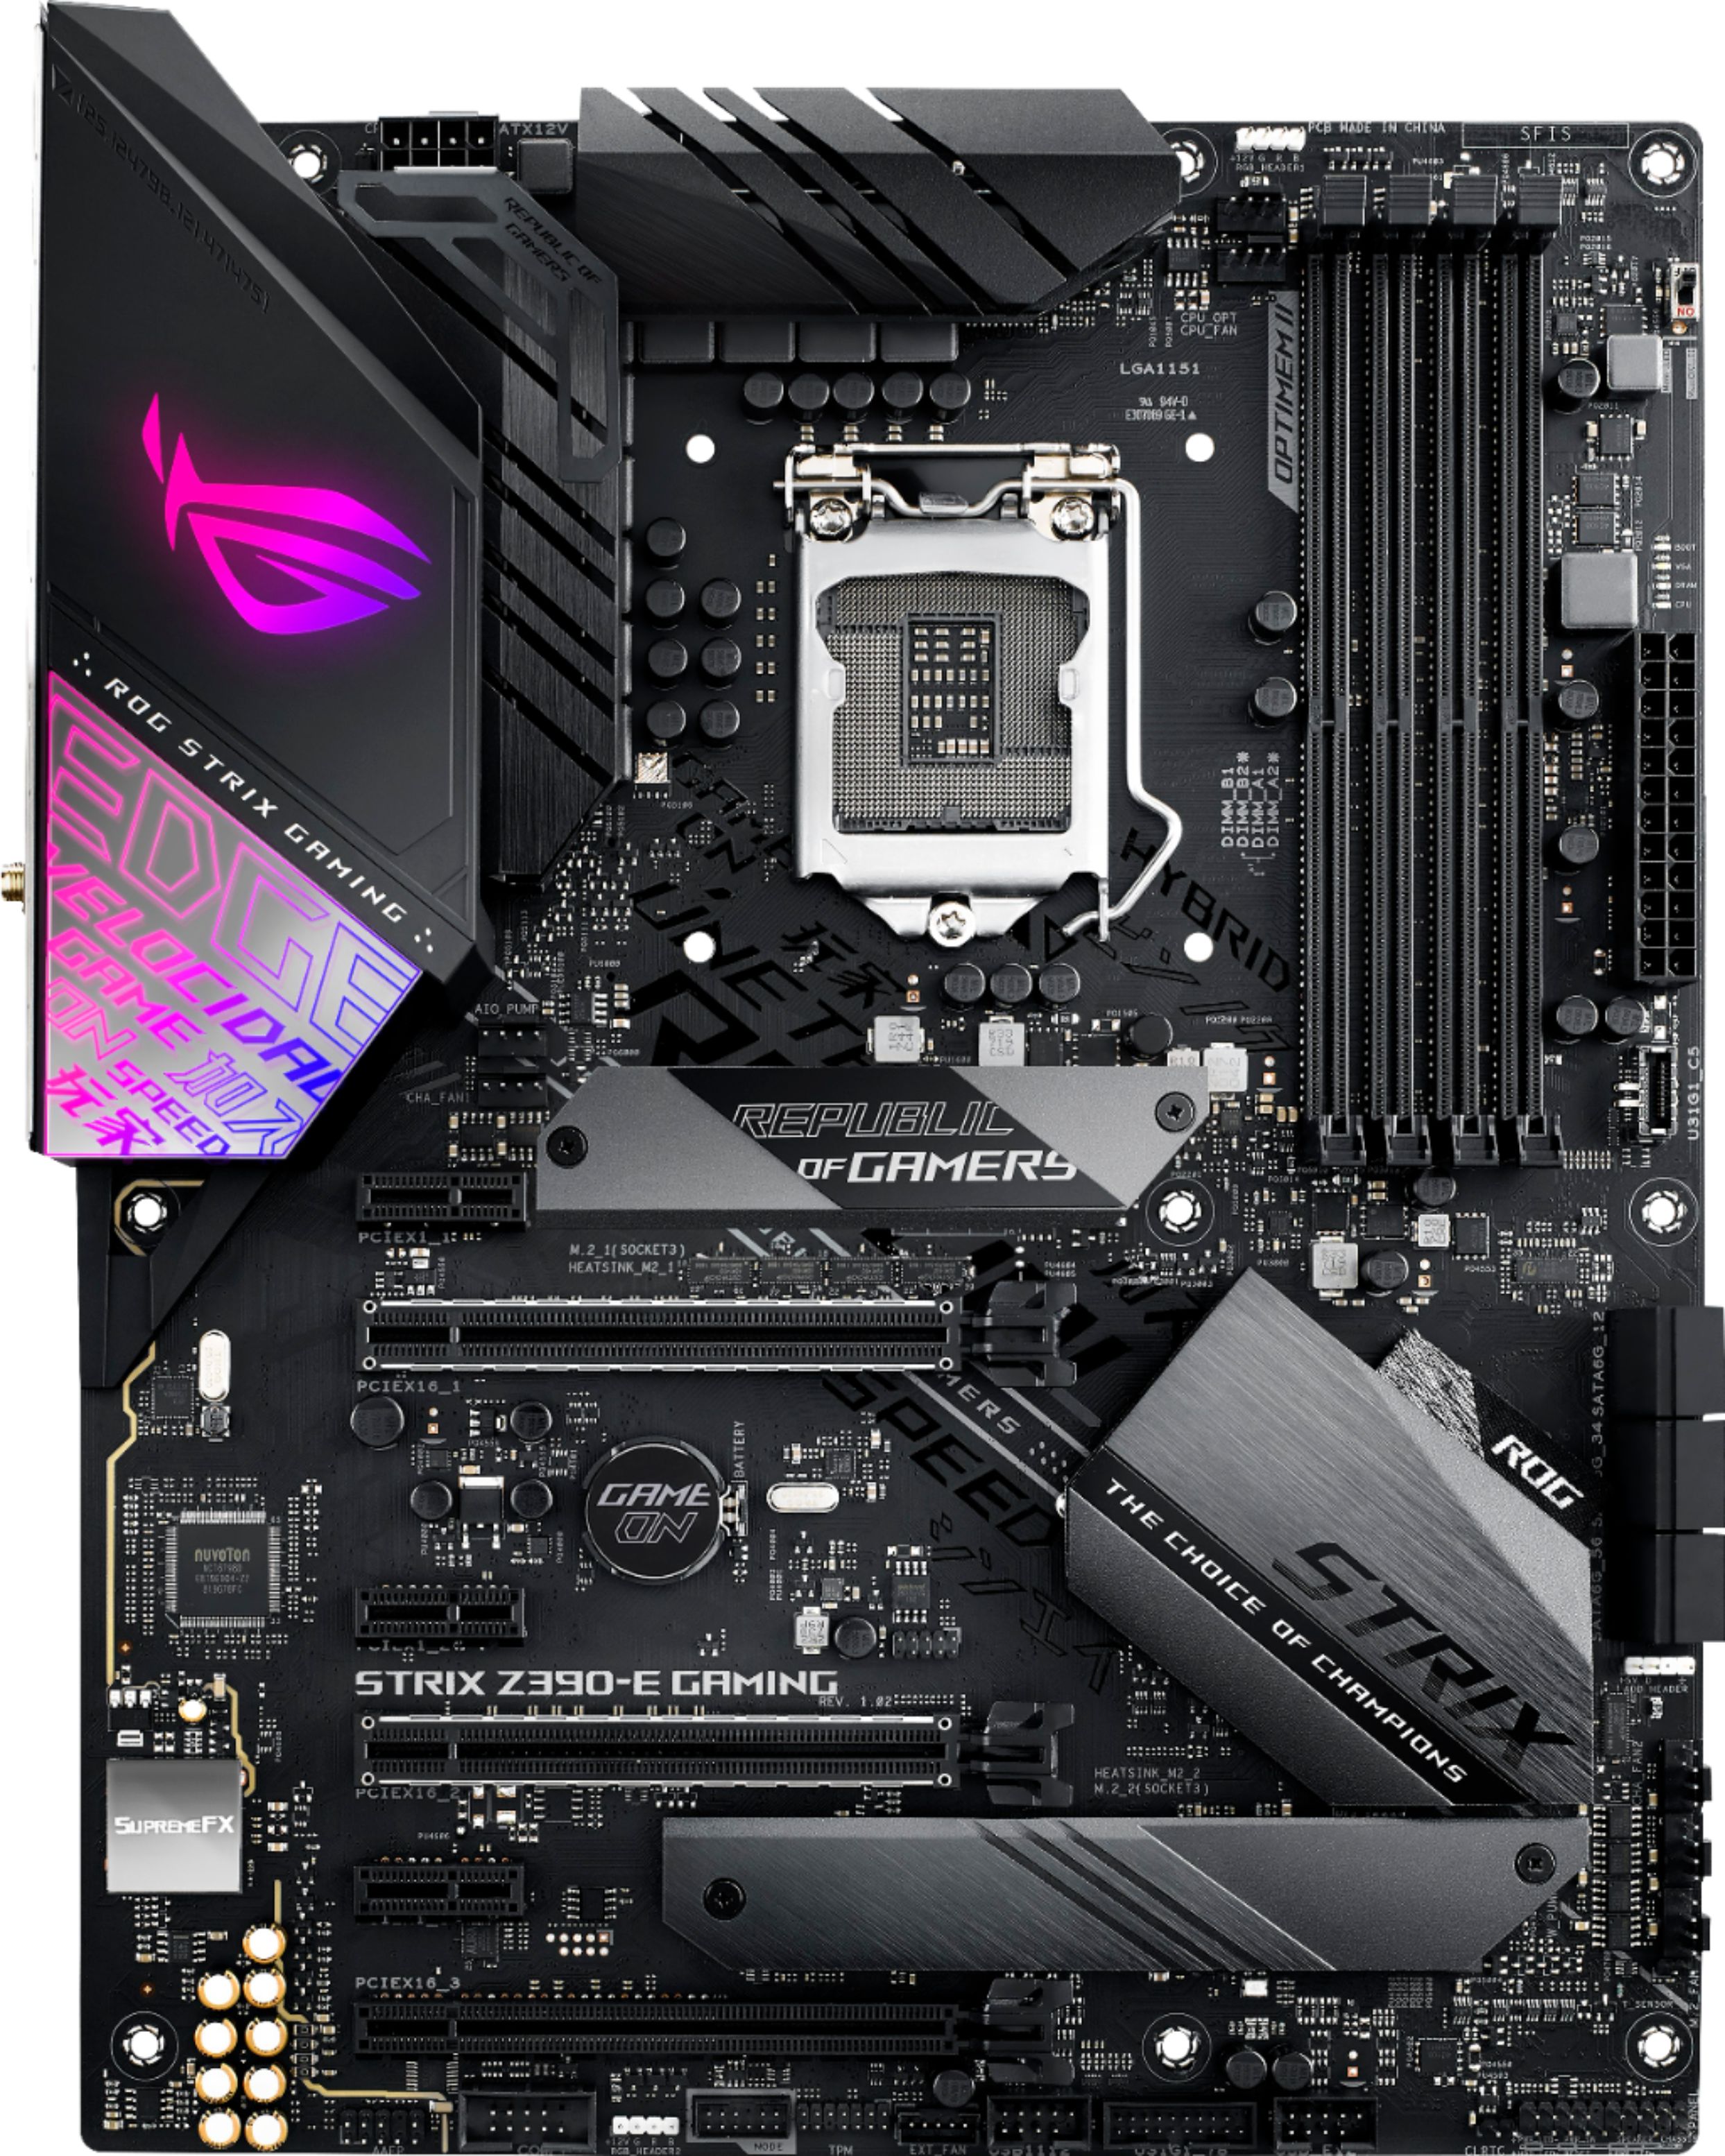 Asus Rog Strix Z390 E Gaming Socket Lga1151 Usb 3 1 Gen 1 Intel Motherboard With Led Lighting Rog Strix Z390 E Gaming Best Buy